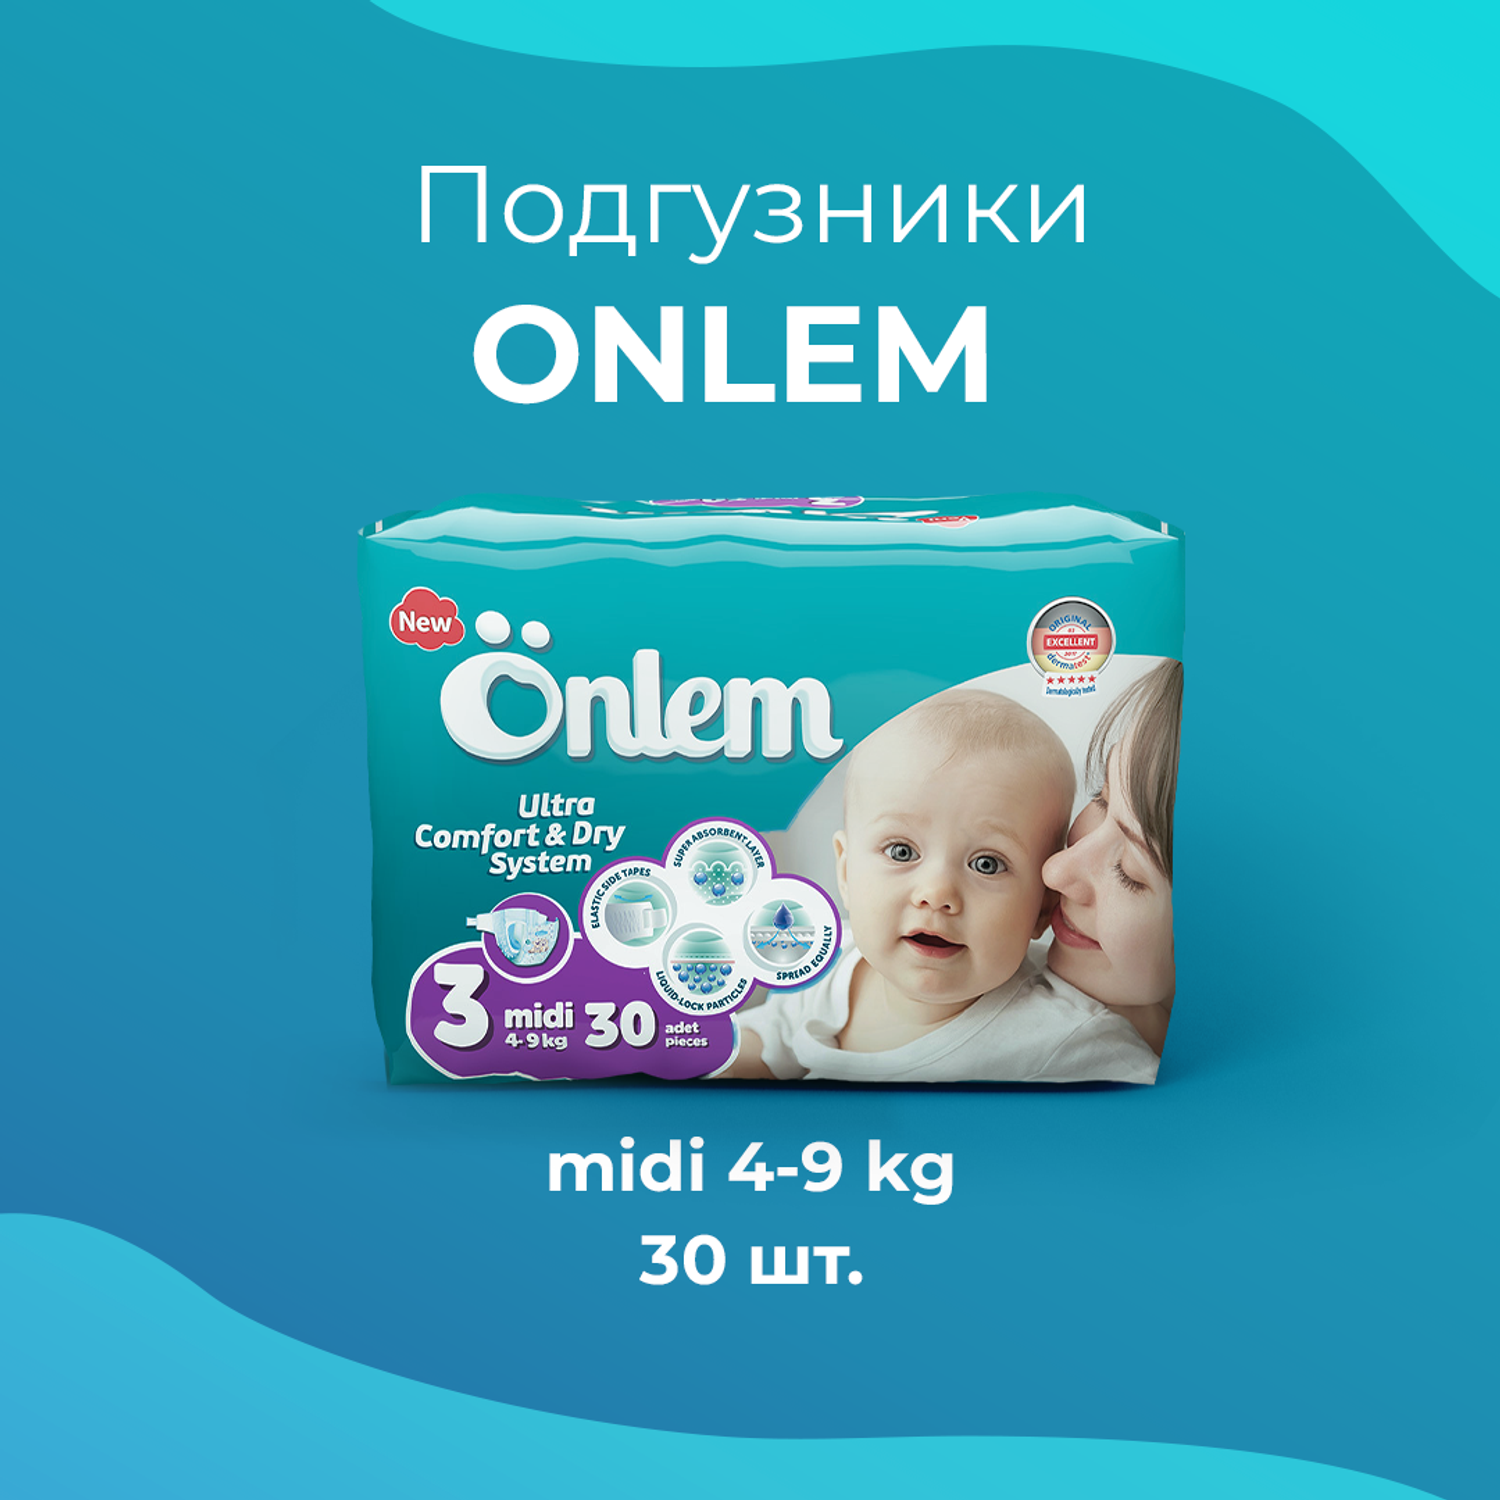 Детские подгузники Onlem Classik 3 (4-9 кг) advantage 30 шт в упаковке - фото 7